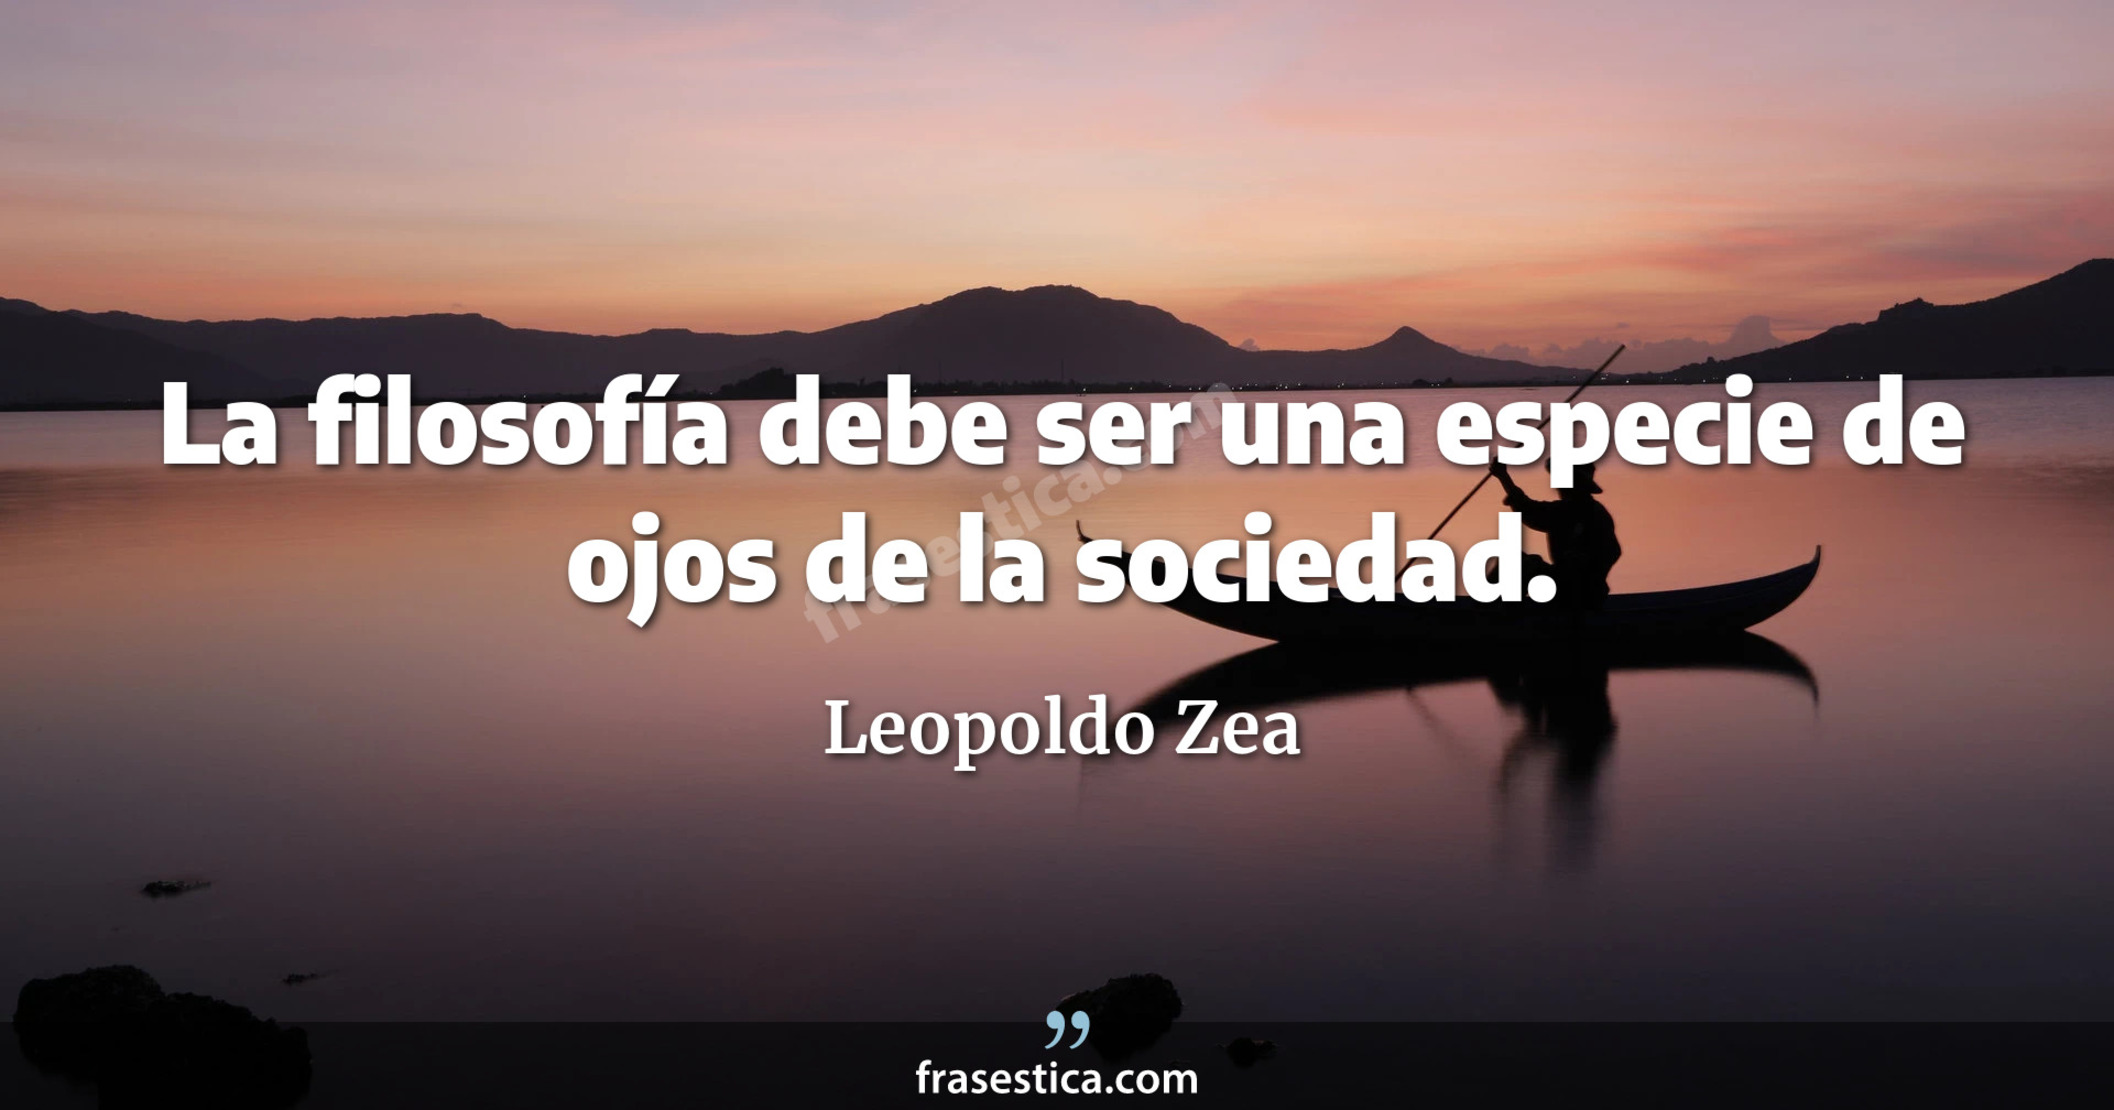 La filosofía debe ser una especie de ojos de la sociedad. - Leopoldo Zea